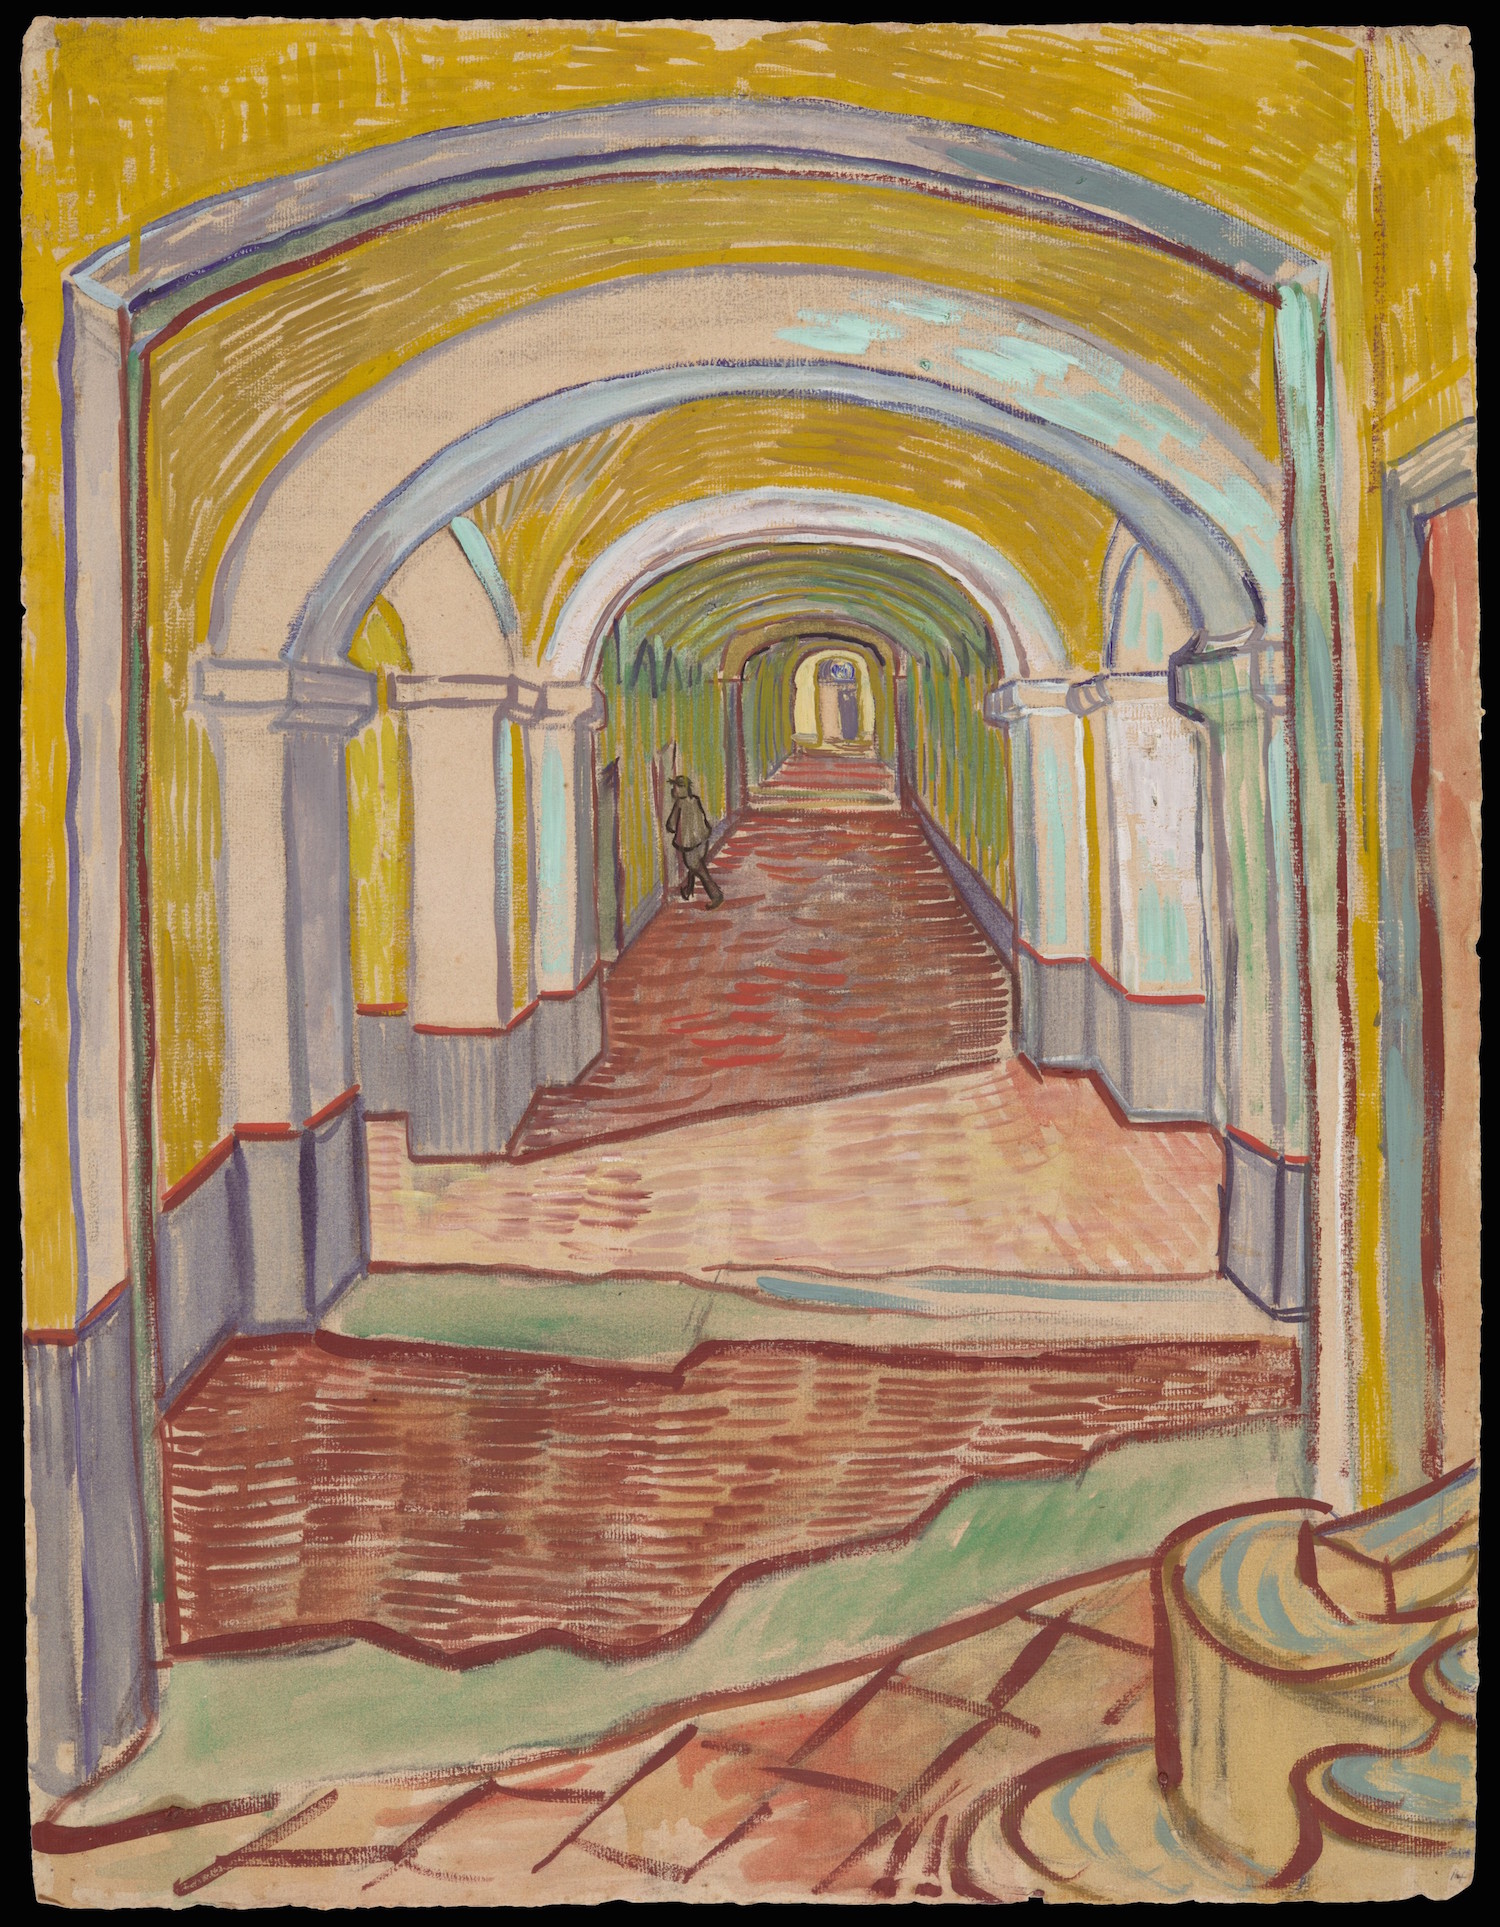 Il corridoio del manicomio by Vincent van Gogh - 1889 - 65.1 x 49.1 cm 